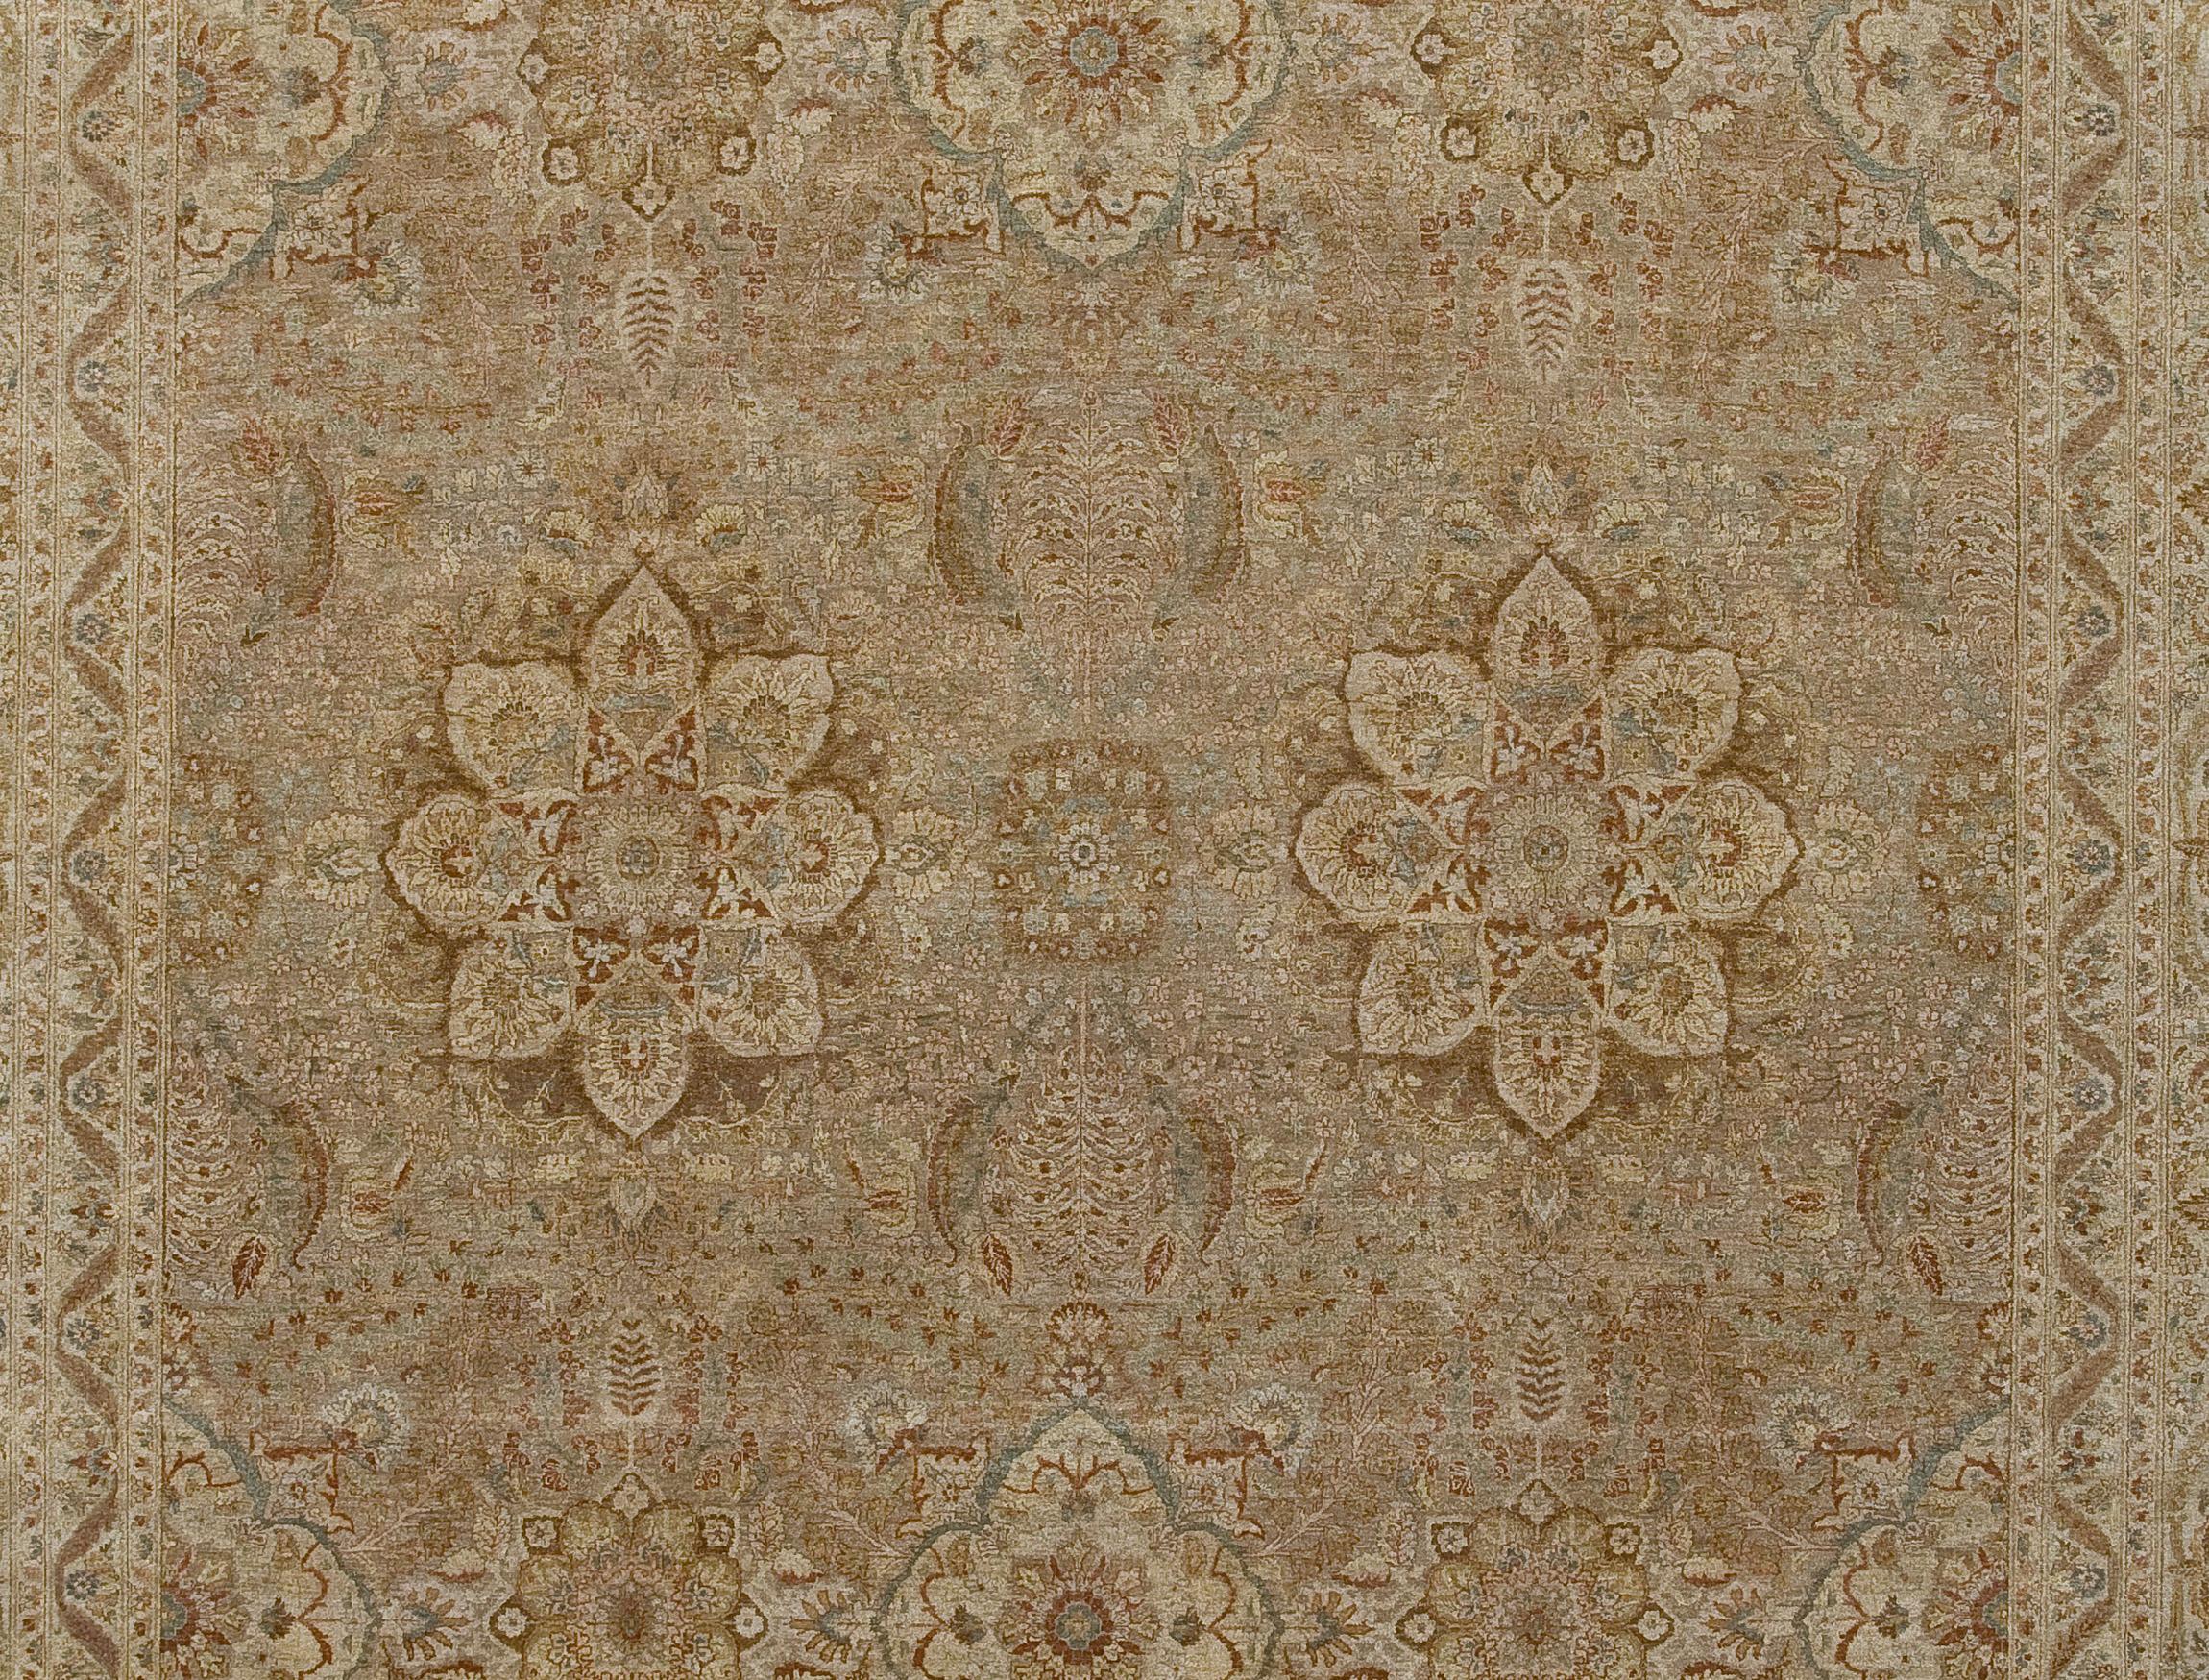 Les ateliers Hadji Jalili étaient réputés dans le monde entier pour leur production de tapis de Tabriz impeccables, de la fin du XIXe siècle au premier quart du XXe siècle (1880-1915). Situés autrefois à Tabriz (nord-ouest de la Perse), ces ateliers